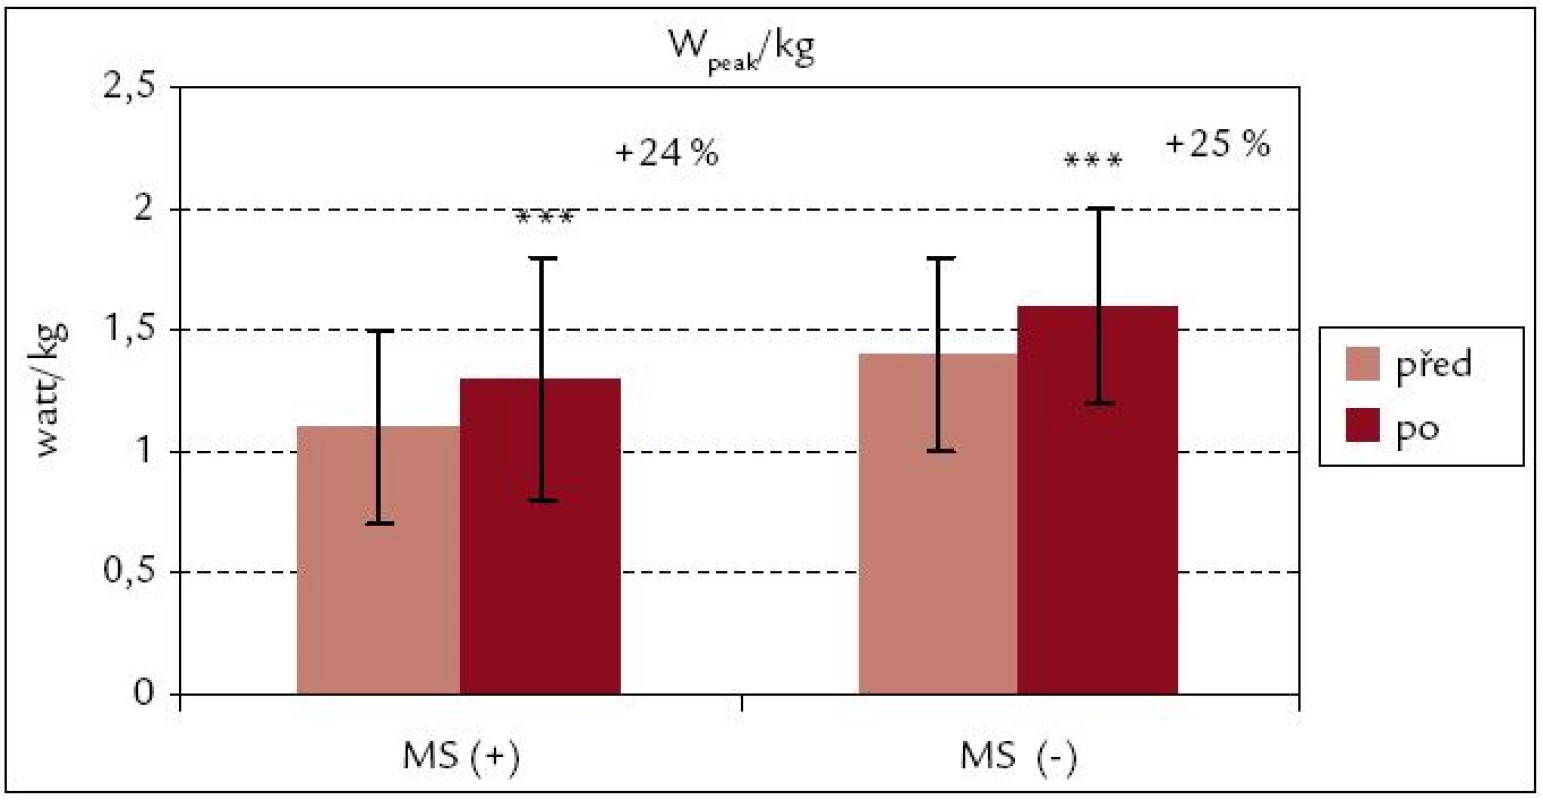 Vrcholový výkon na 1 kg hmotnosti před rehabilitací a po ní – srovnání souborů MS(+) a MS(–).
*** p &lt; 0,001